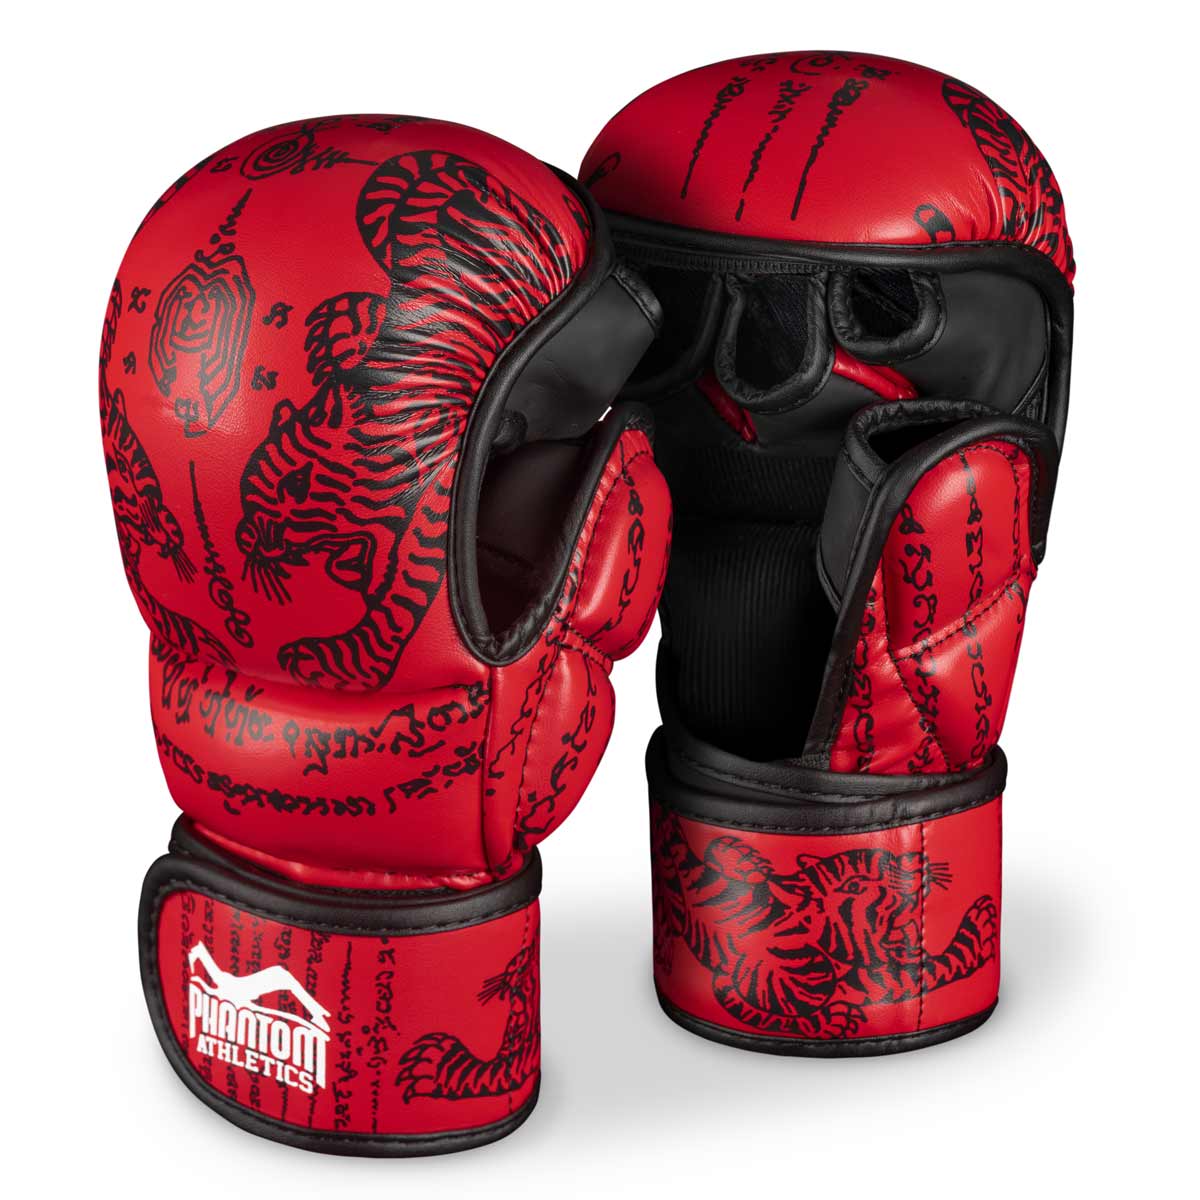 Phantom Muay Thai handskar för thaiboxning och MMA sparring, tävling och träning. I traditionell Sak Yant-design och färgen röd.